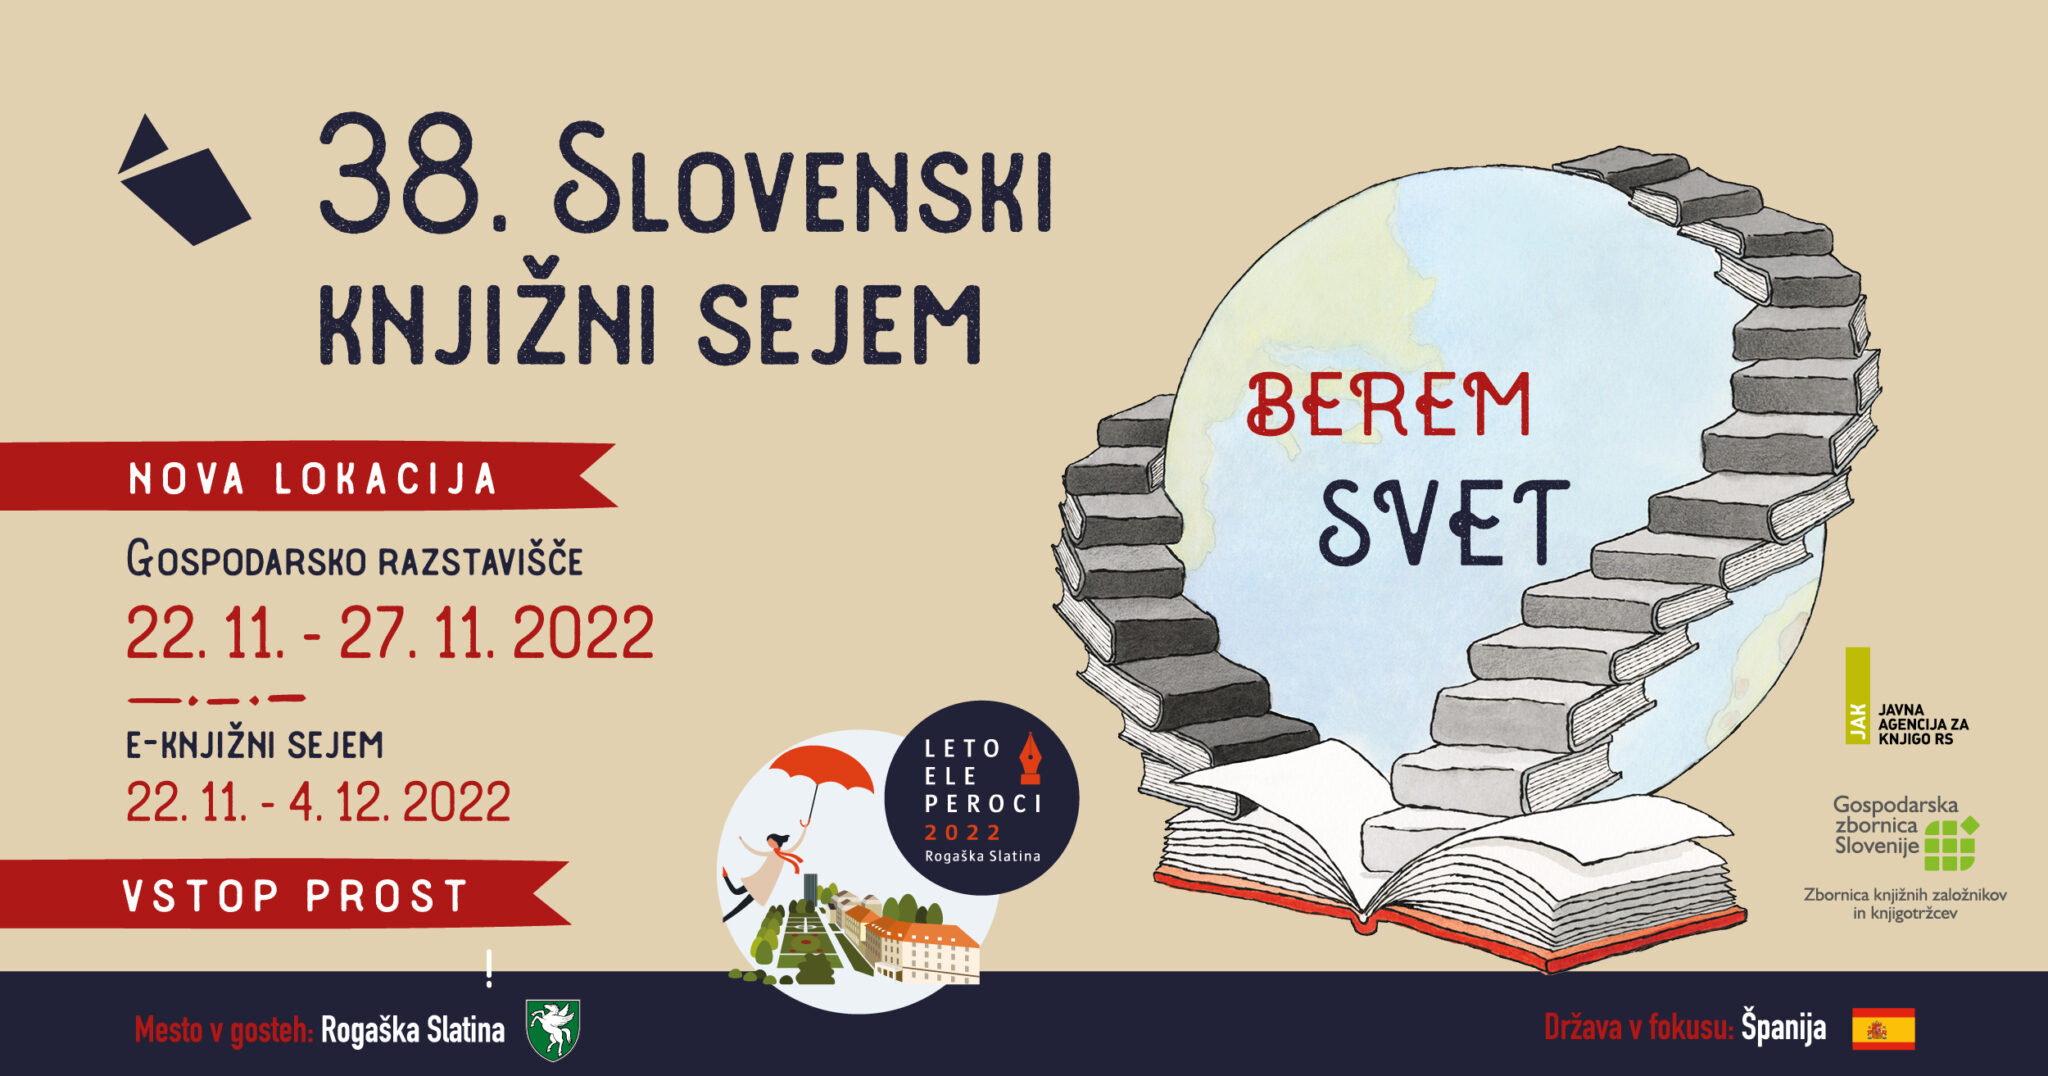 Slovenski knjižni sejem